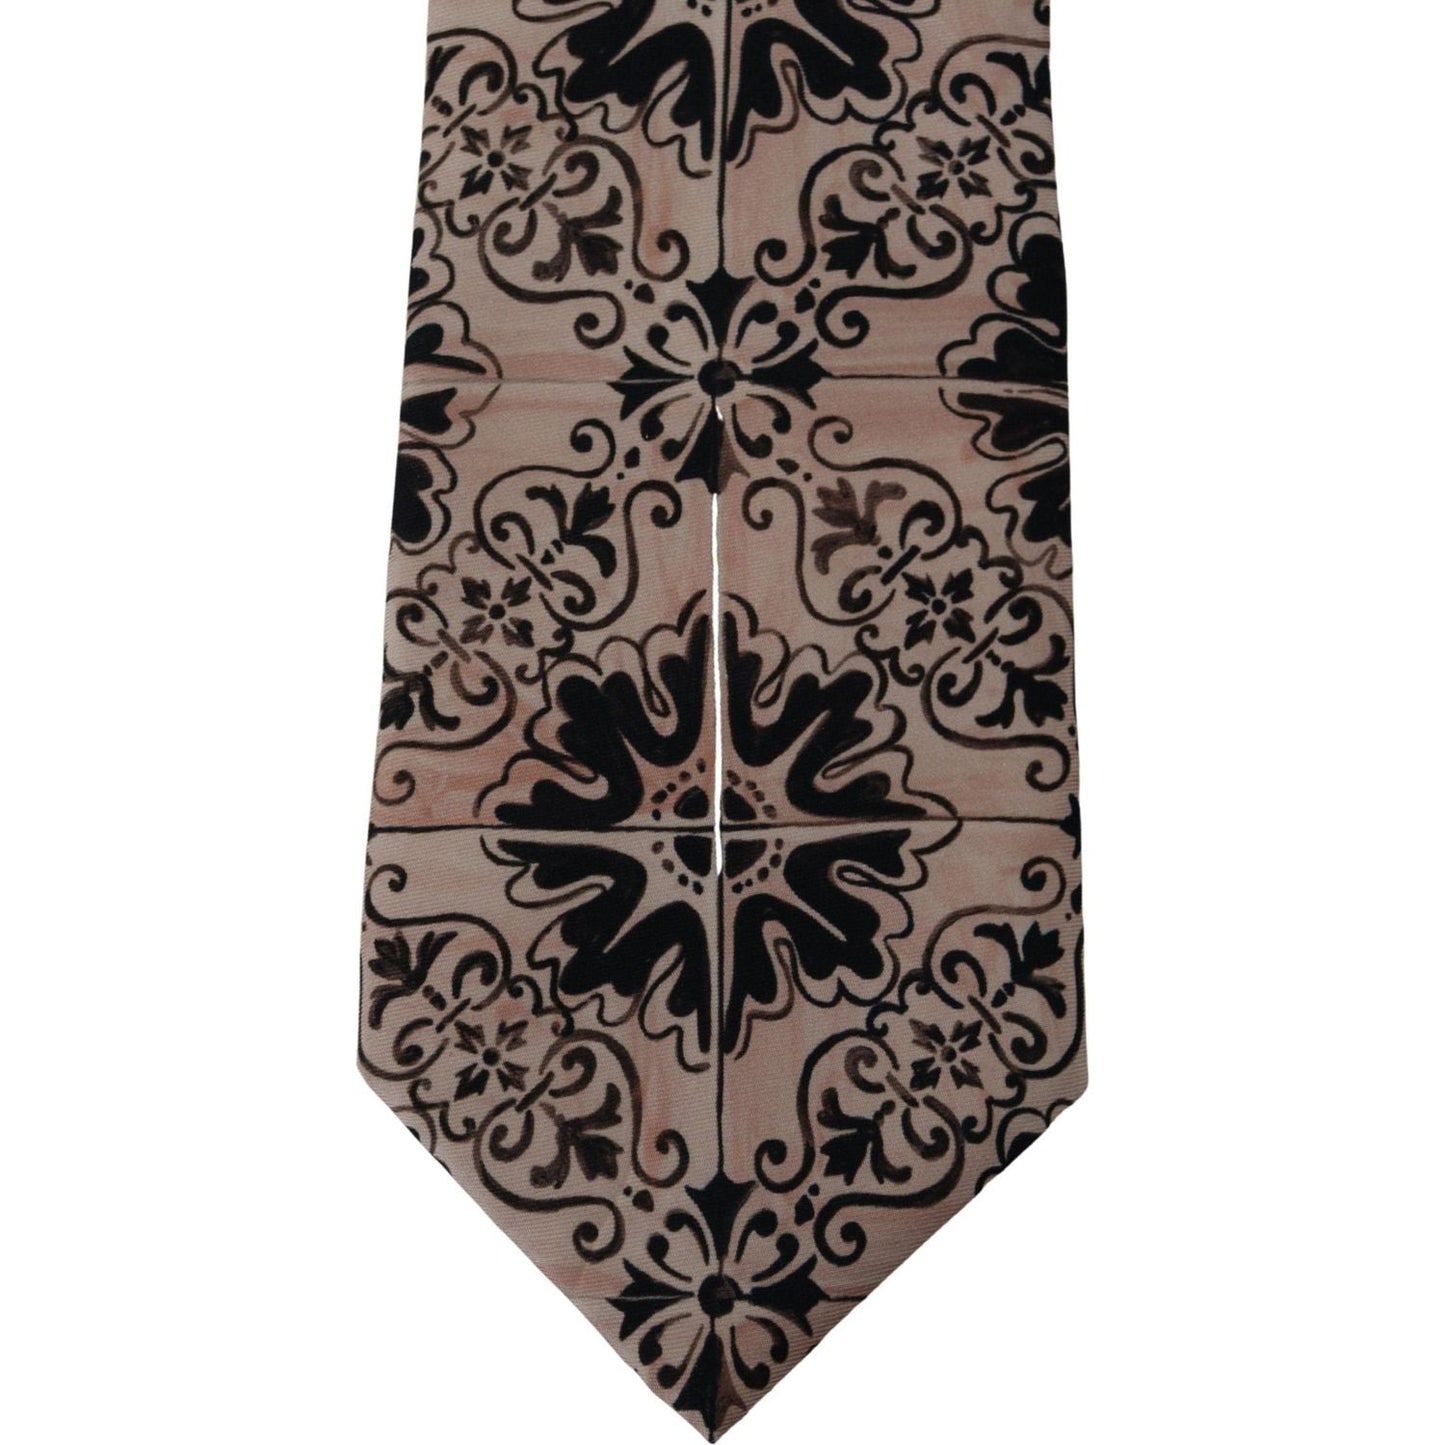 Dolce & Gabbana Stunning Silk Gentleman's Tie in Rich Brown beige-fantasy-pattern-necktie-accessory-black IMG_3988-scaled-563da03f-cb6.jpg